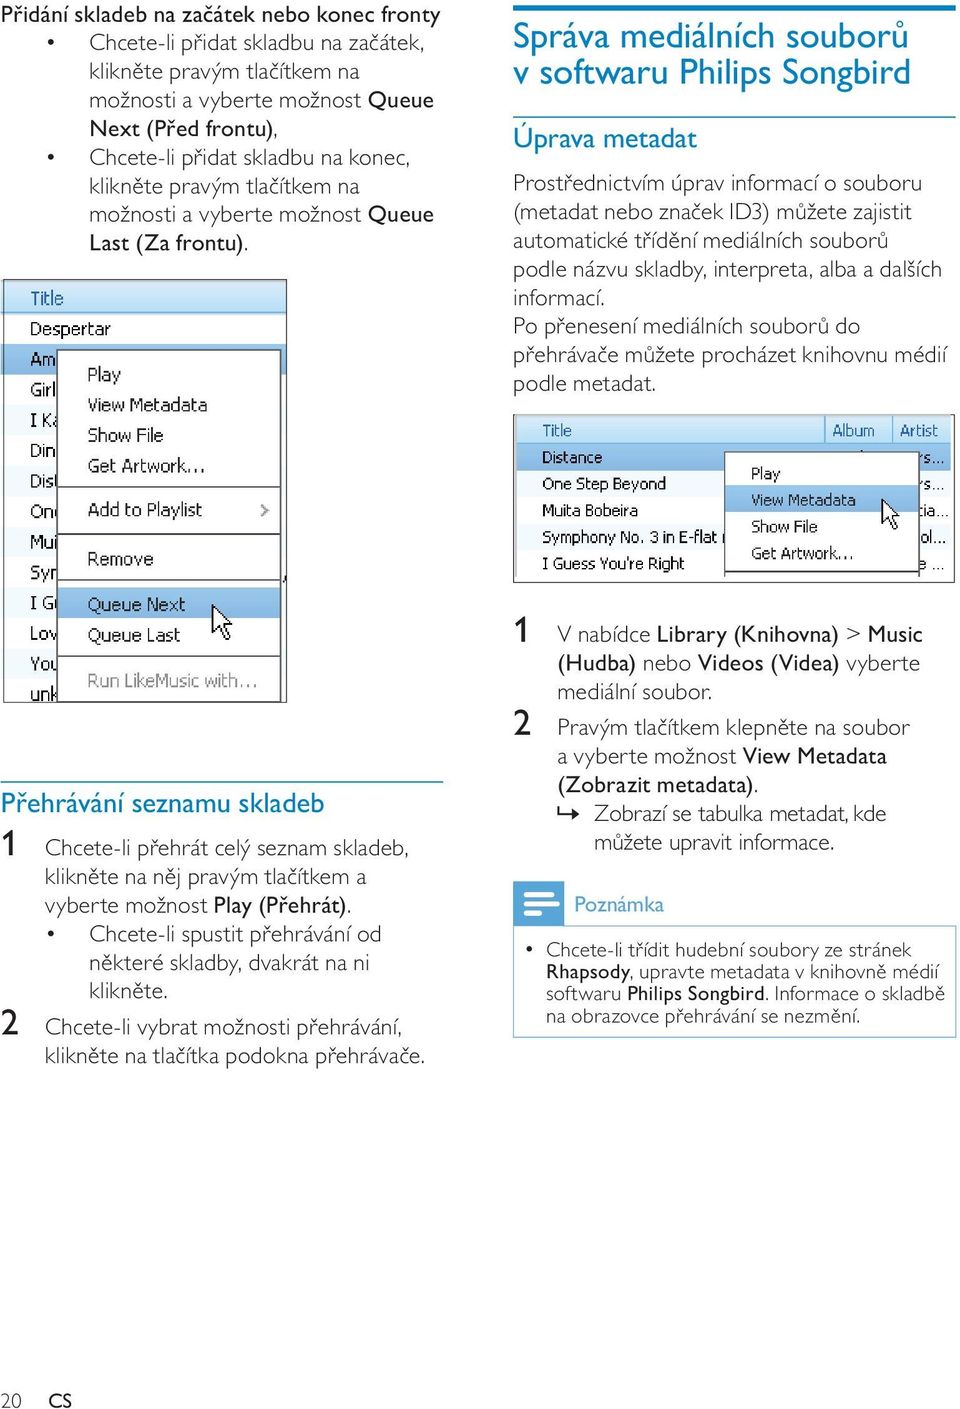 Správa mediálních souborů v softwaru Philips Songbird Úprava metadat Prostřednictvím úprav informací o souboru (metadat nebo značek ID3) můžete zajistit automatické třídění mediálních souborů podle